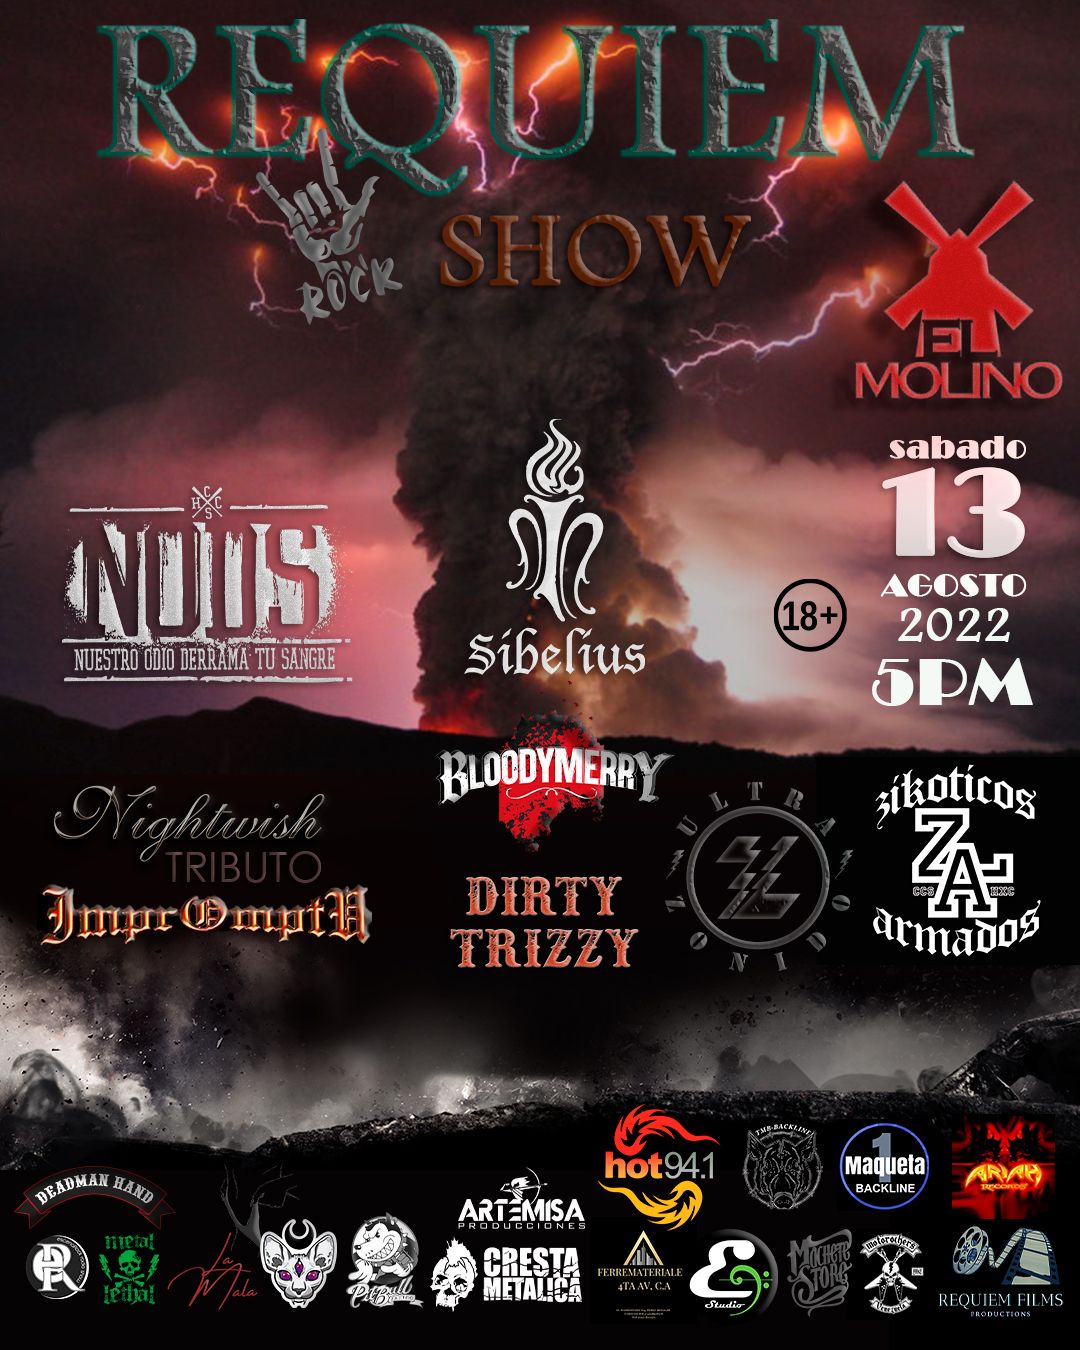 Requiem-Rock-Show-Primera-Edicion-El-Molino-Caracas-Venezuela-Flyer.jpg